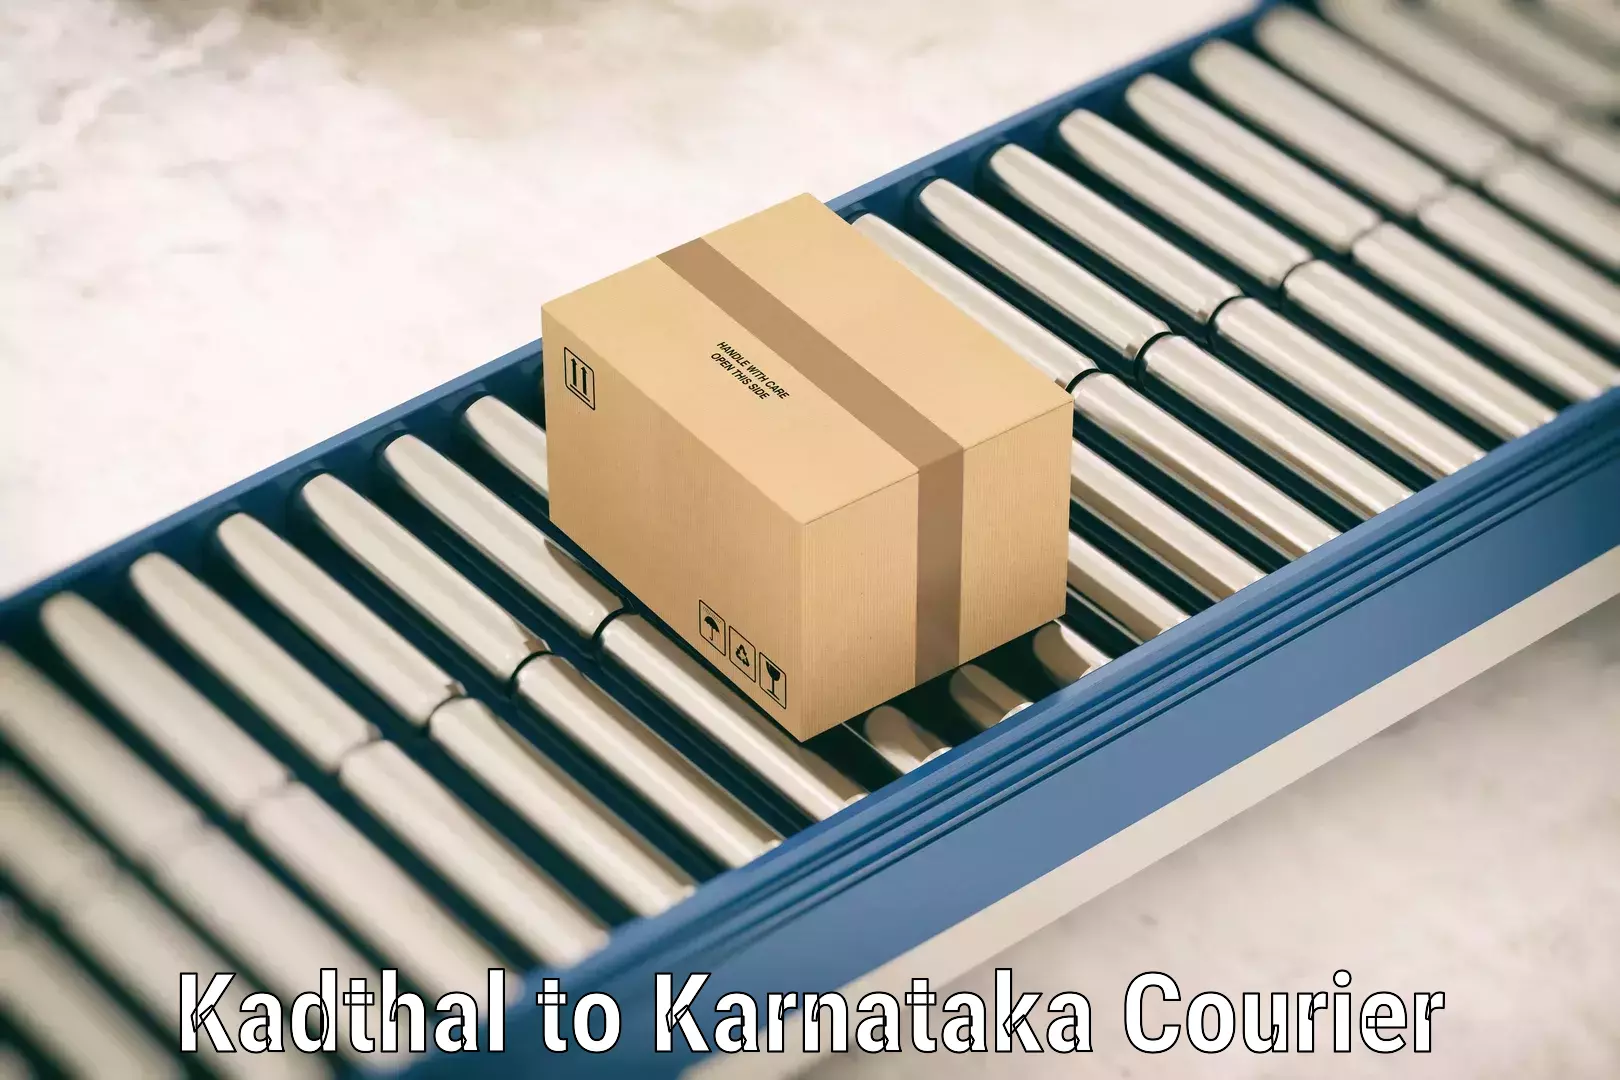 Baggage shipping calculator Kadthal to Karnataka